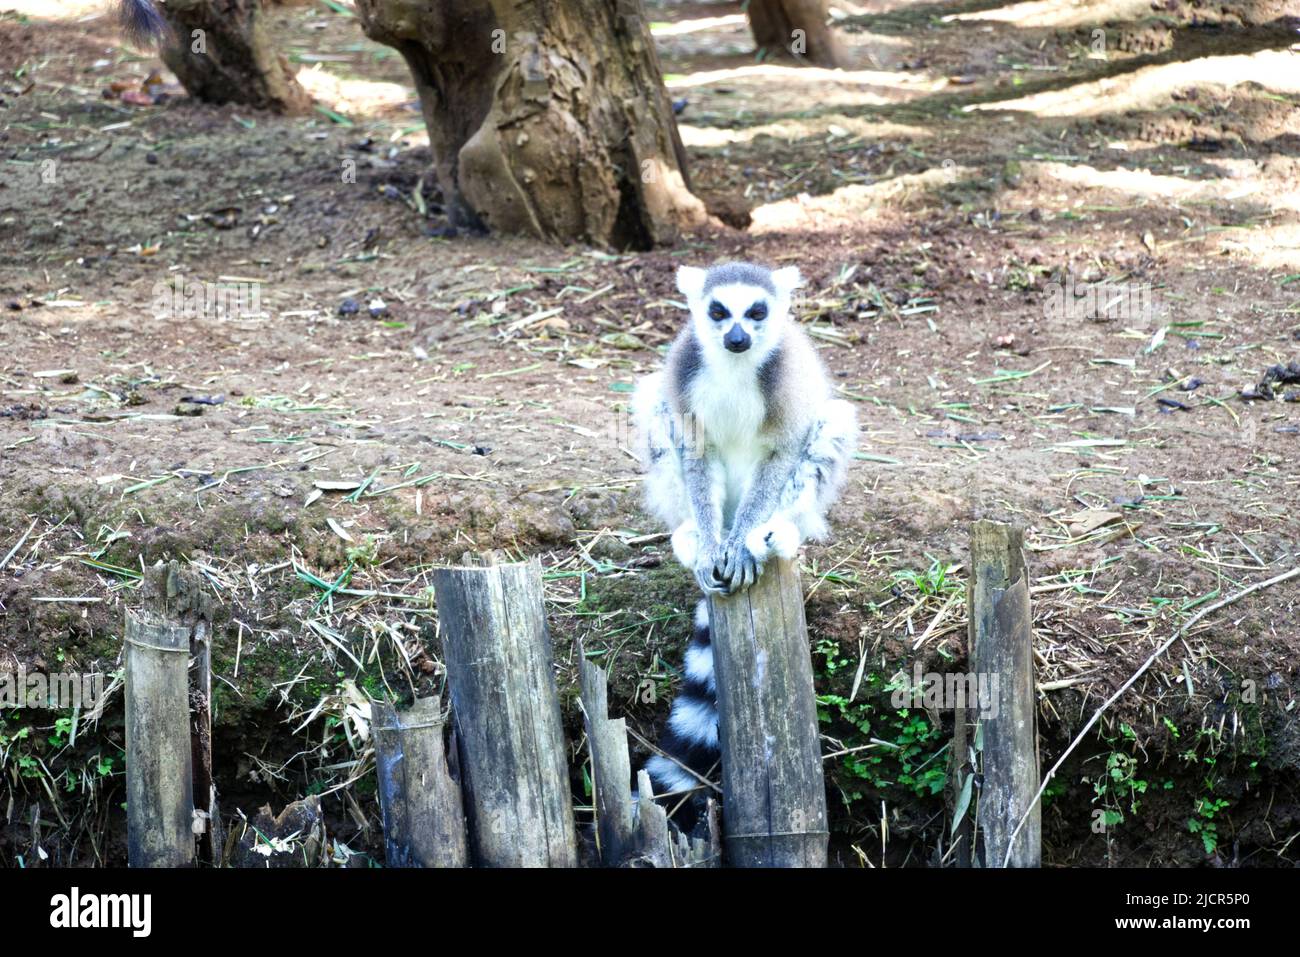 Die Welt der bedrohten Lemuren. Die schönsten Halbaffen sind unheimlich lieb, wenn sie sie etwas zu fressen bekommen :-) Stock Photo